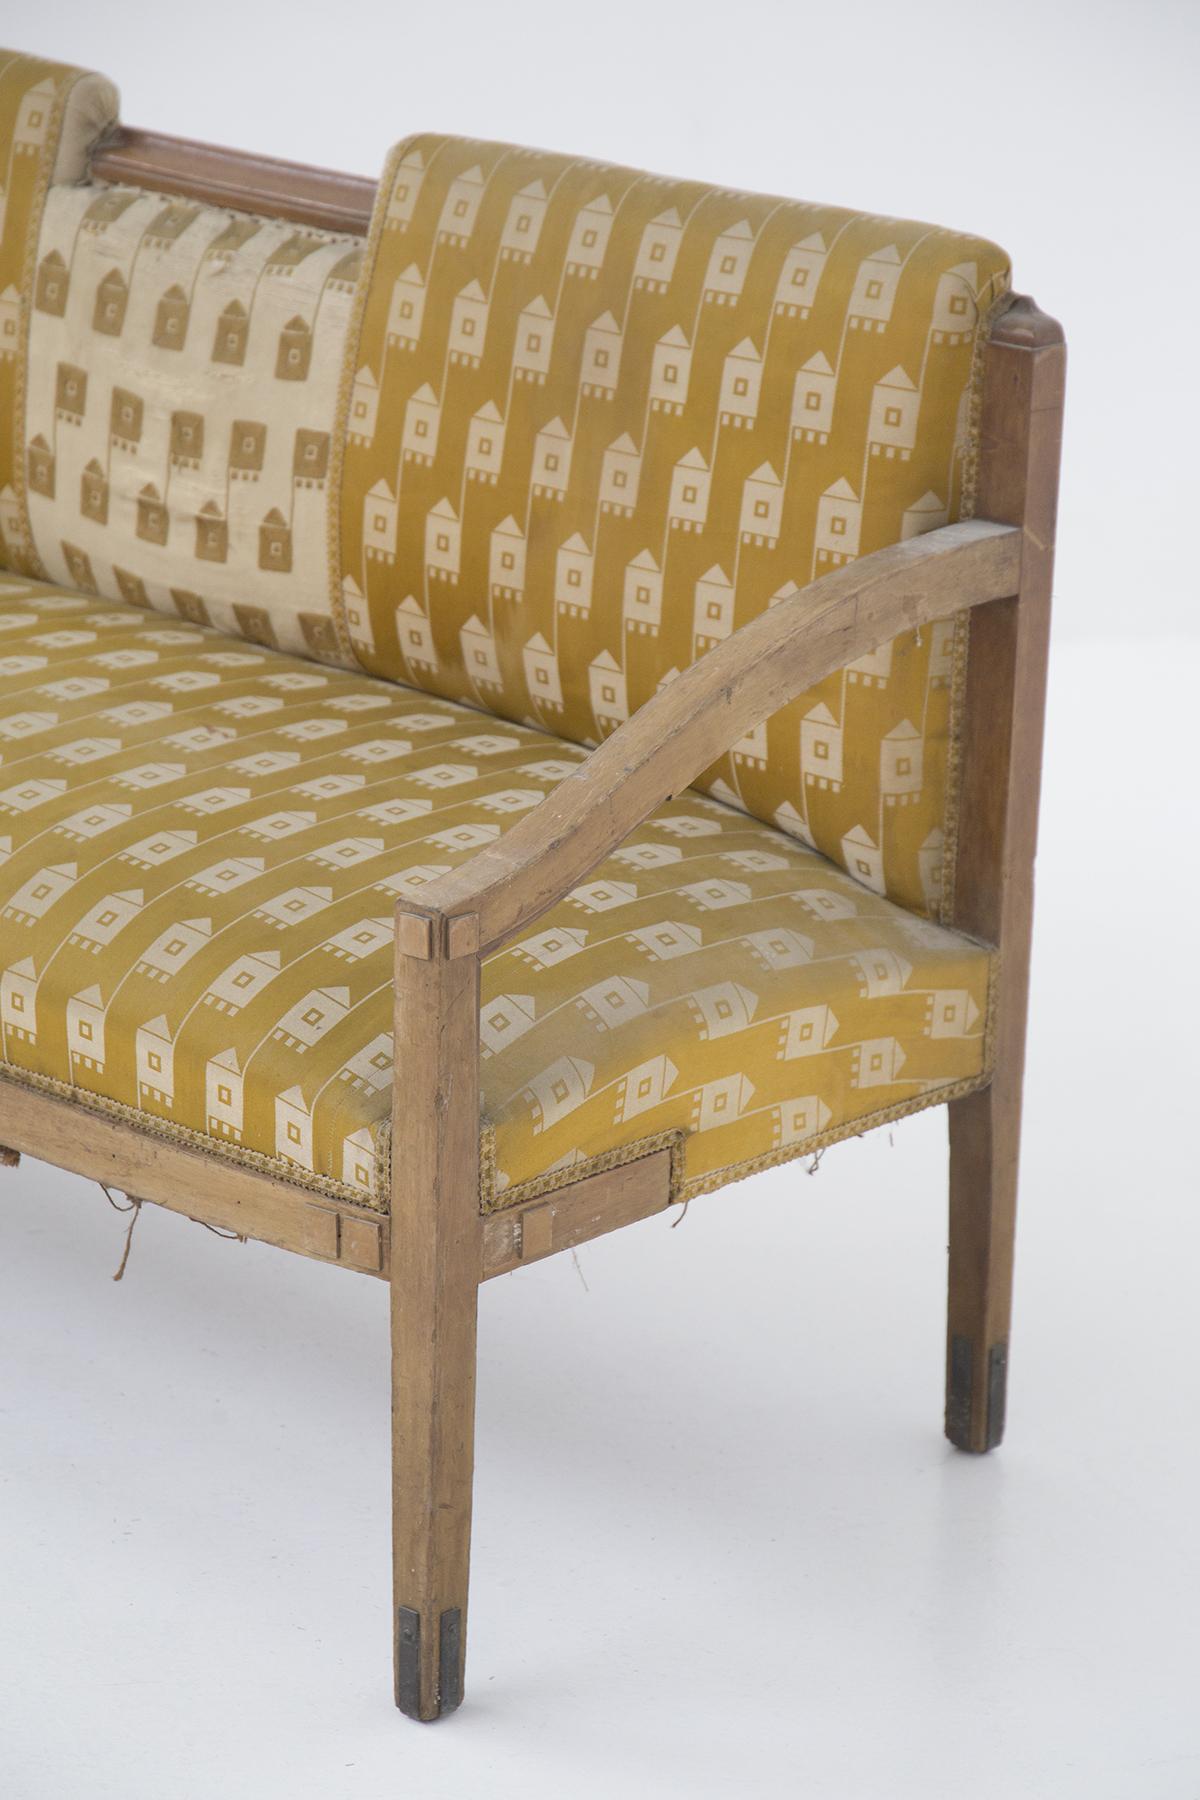 Le canapé a été conçu dans les années 1950 dans le respect de l'artisanat italien.
Il est tapissé dans le tissu d'origine.
La structure est très simple et de formes dures, faite de bois simple, mais durable et belle. Il y a 4 pieds carrés,